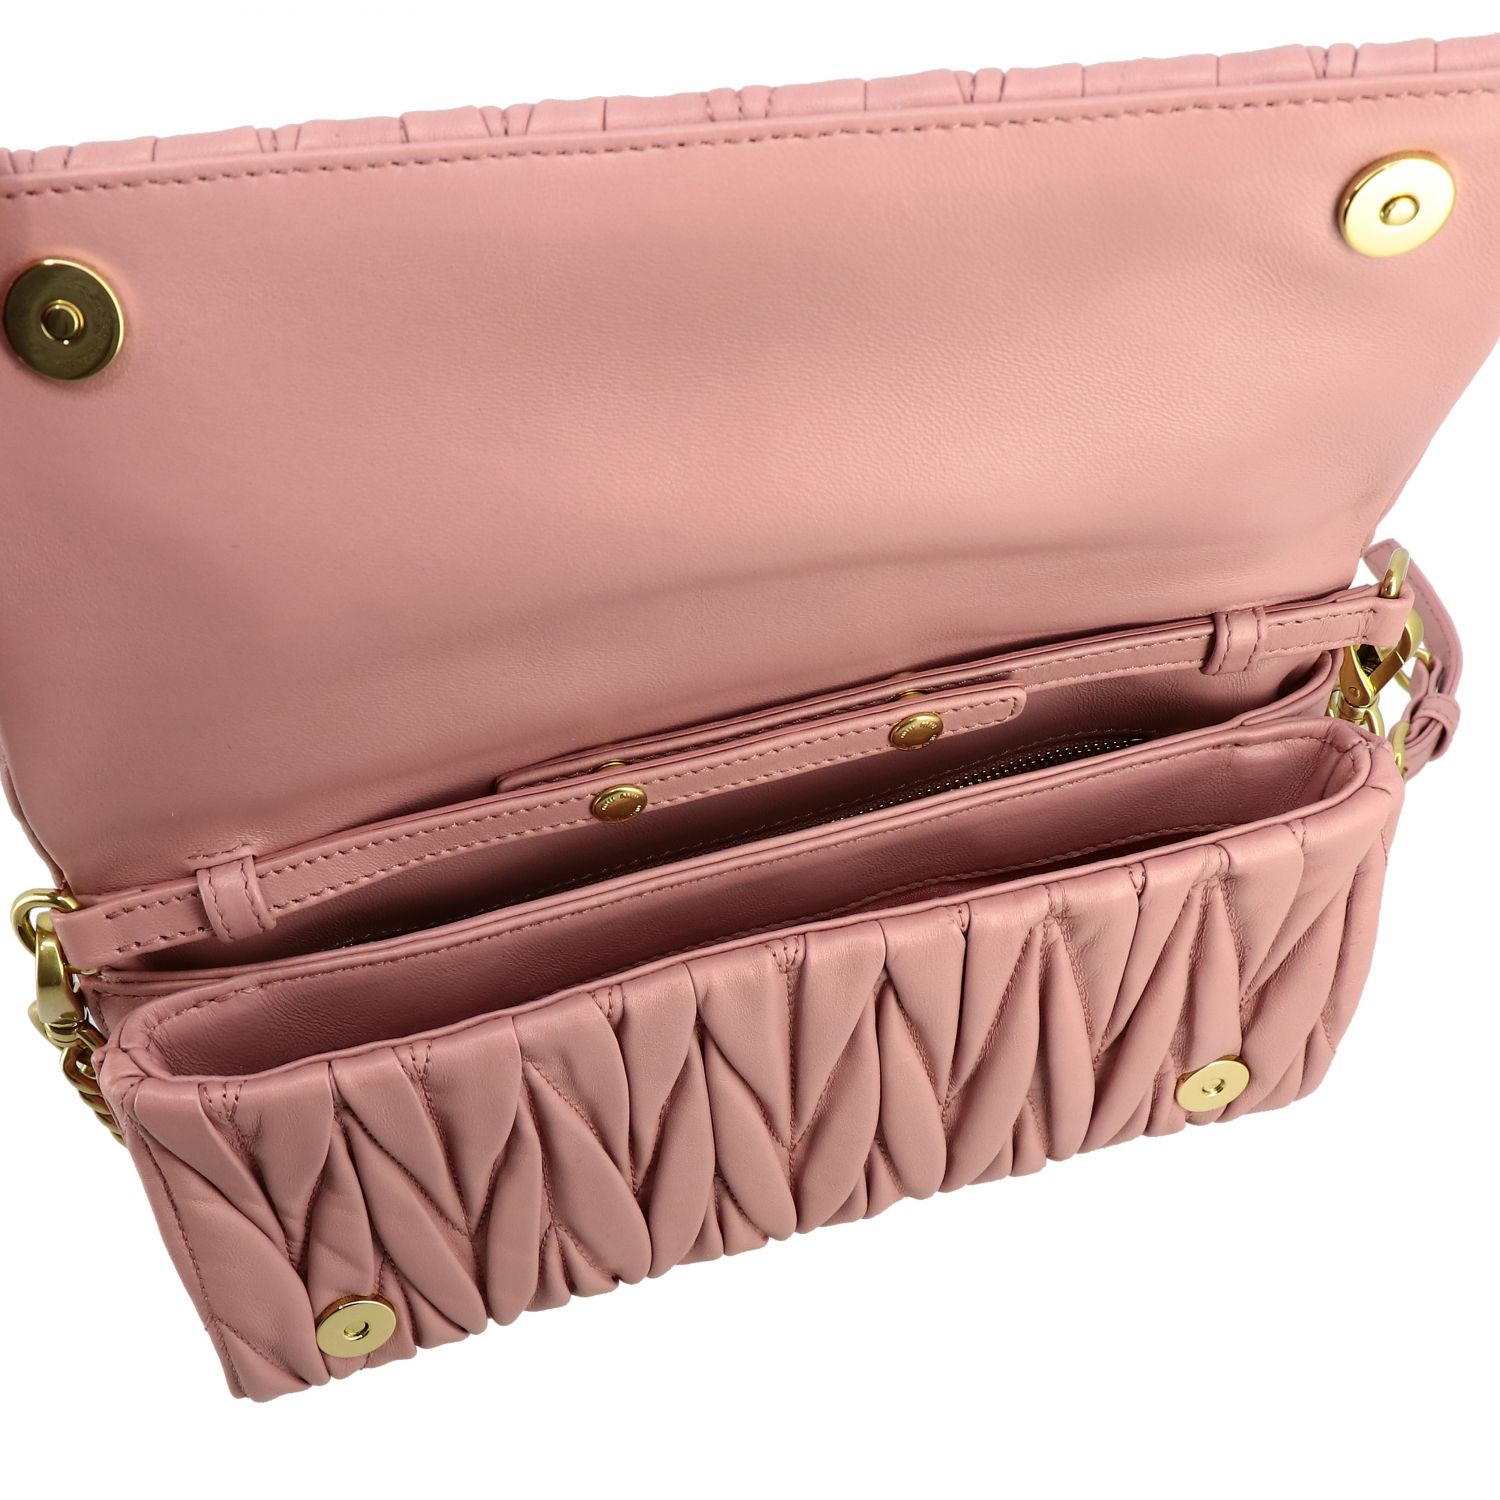 MIU MIU: shoulder bag in matelassé leather - Pink  Miu Miu crossbody bags  5BD140OOO N88 online at